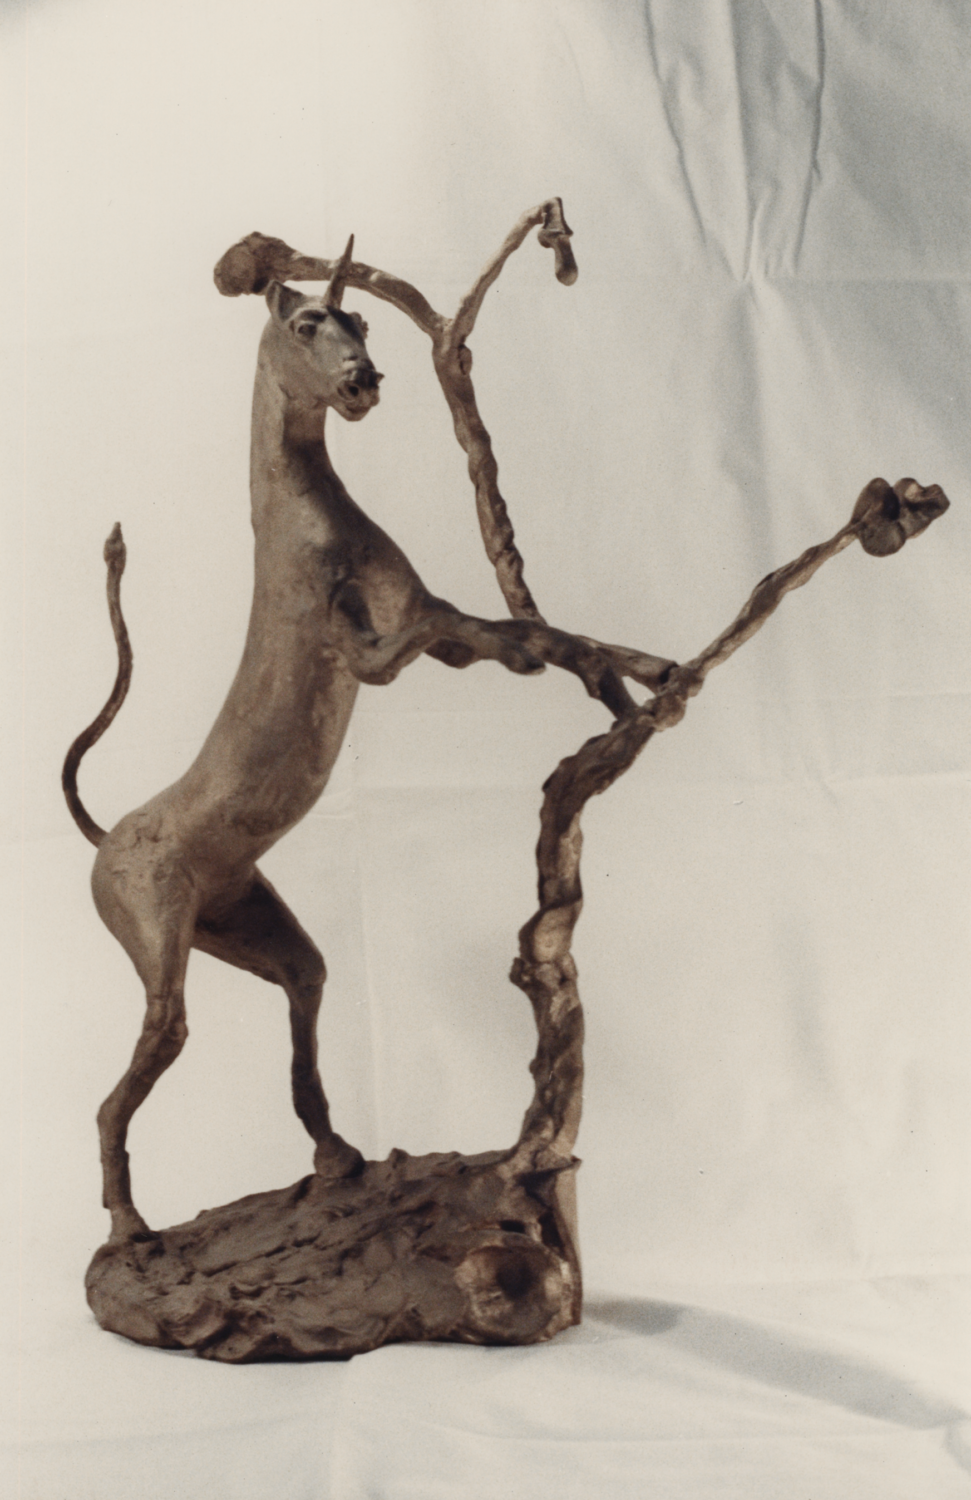 Unicorn and Oak Tree, 1991